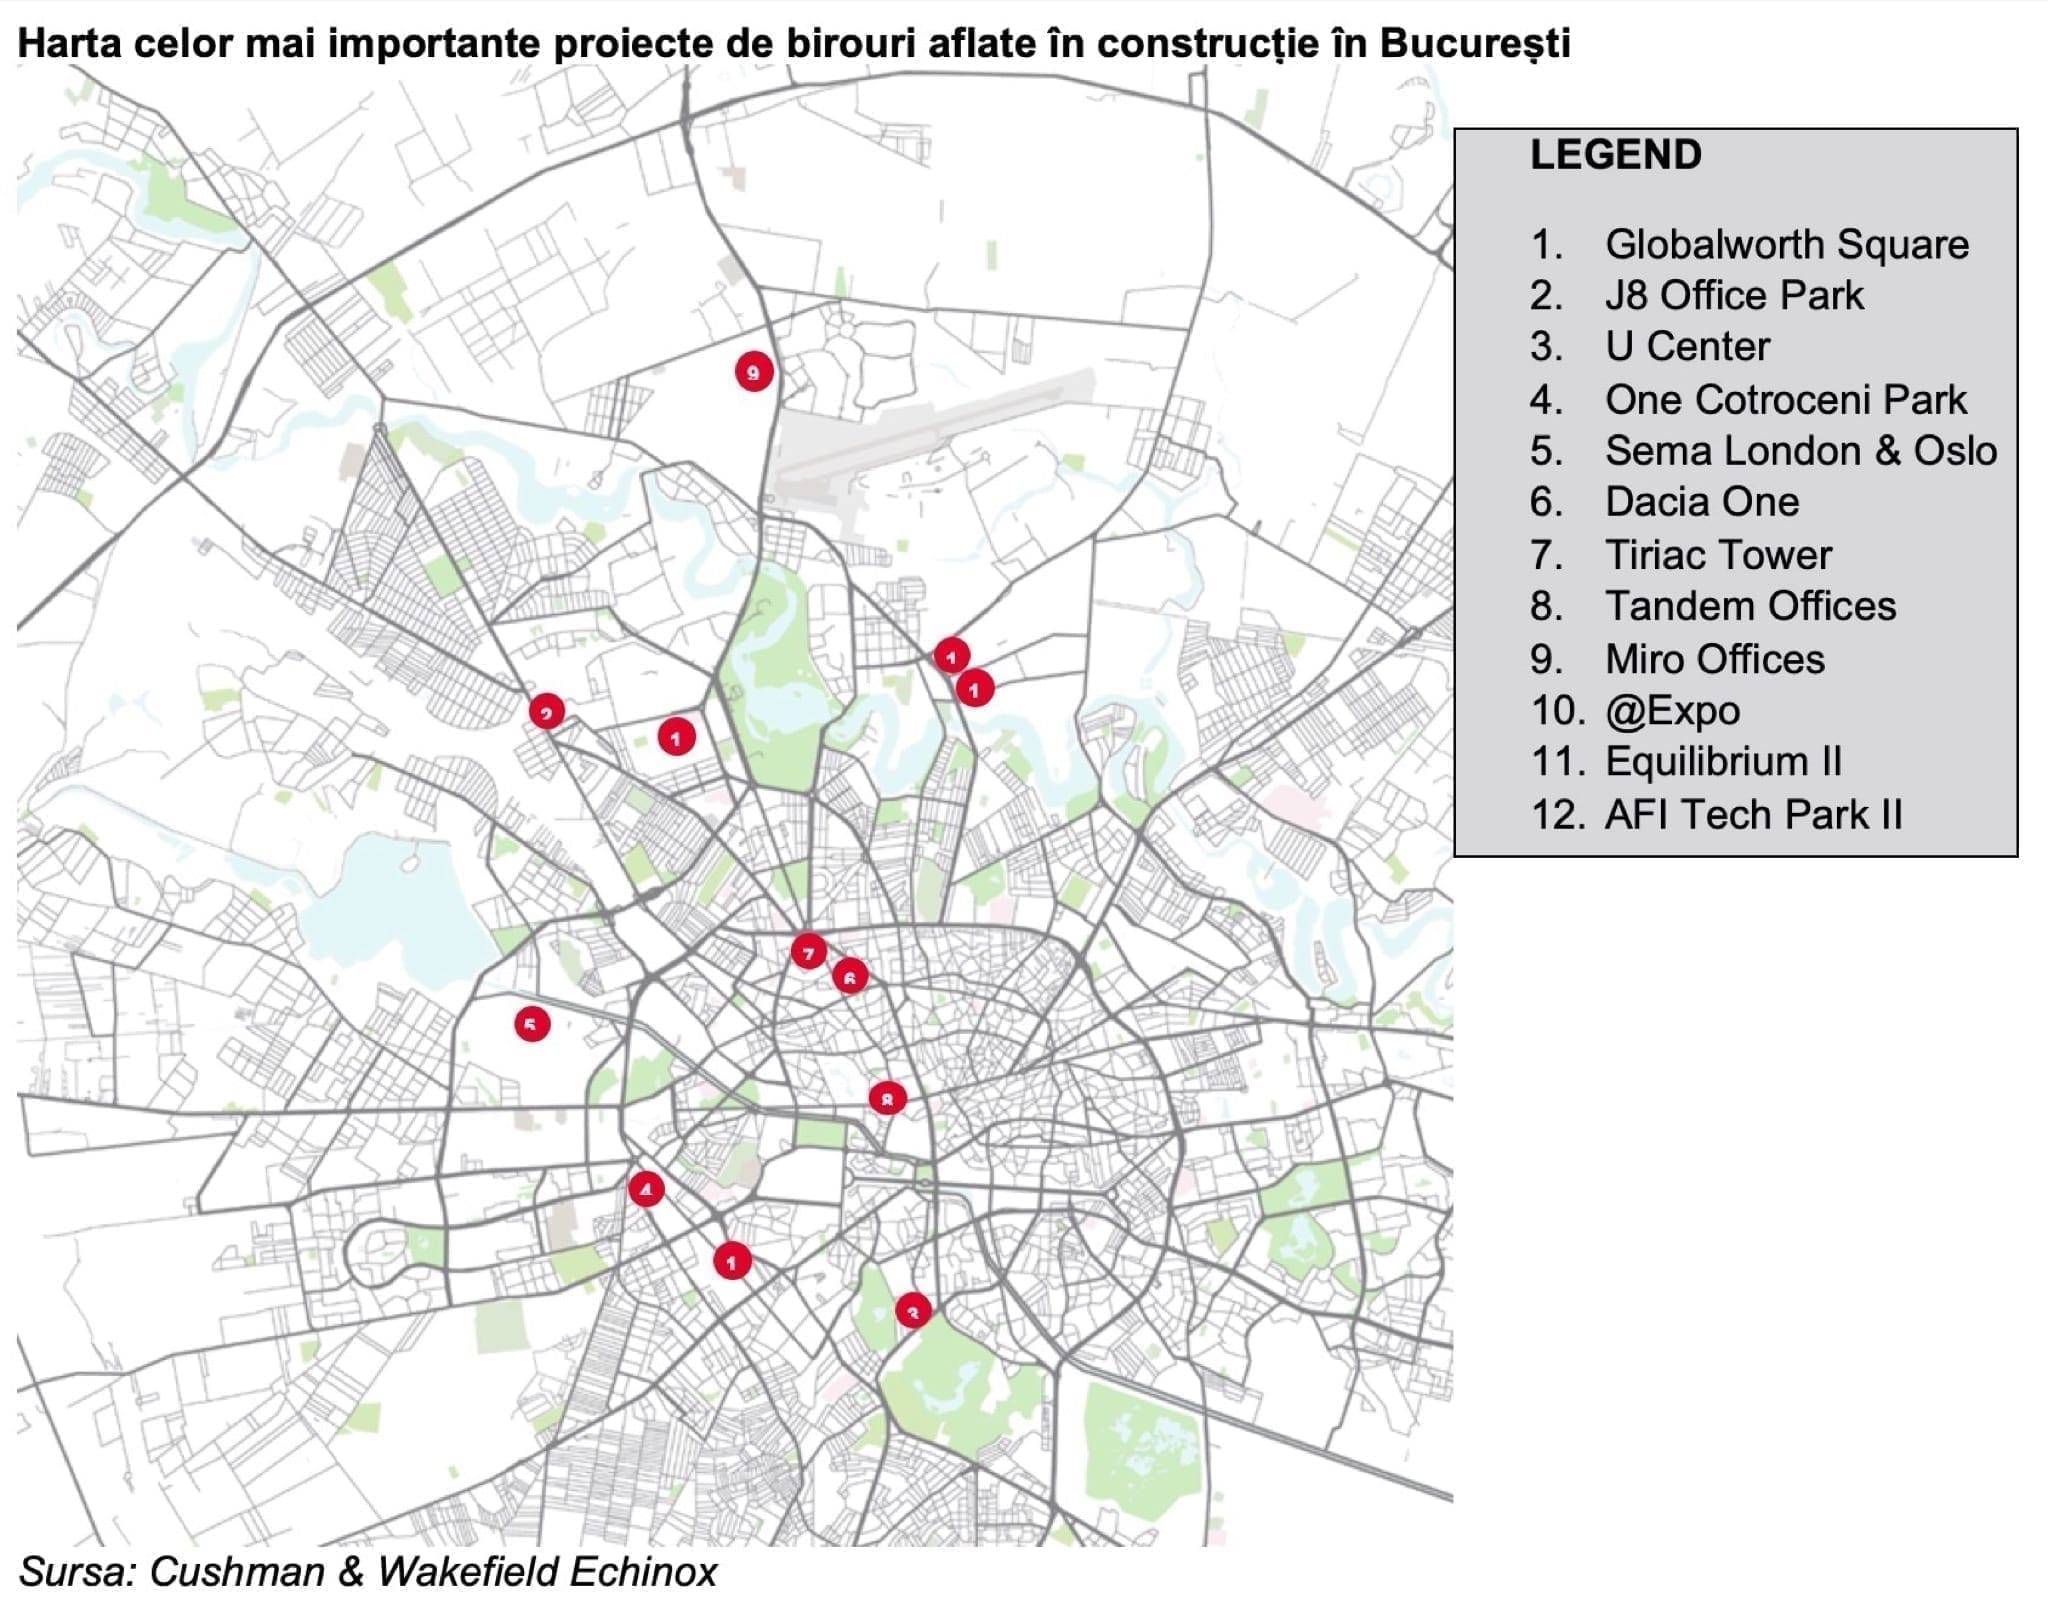 birouri - C&W Echinox: Nivelul de utilizare al birourilor din București, la 40-50%